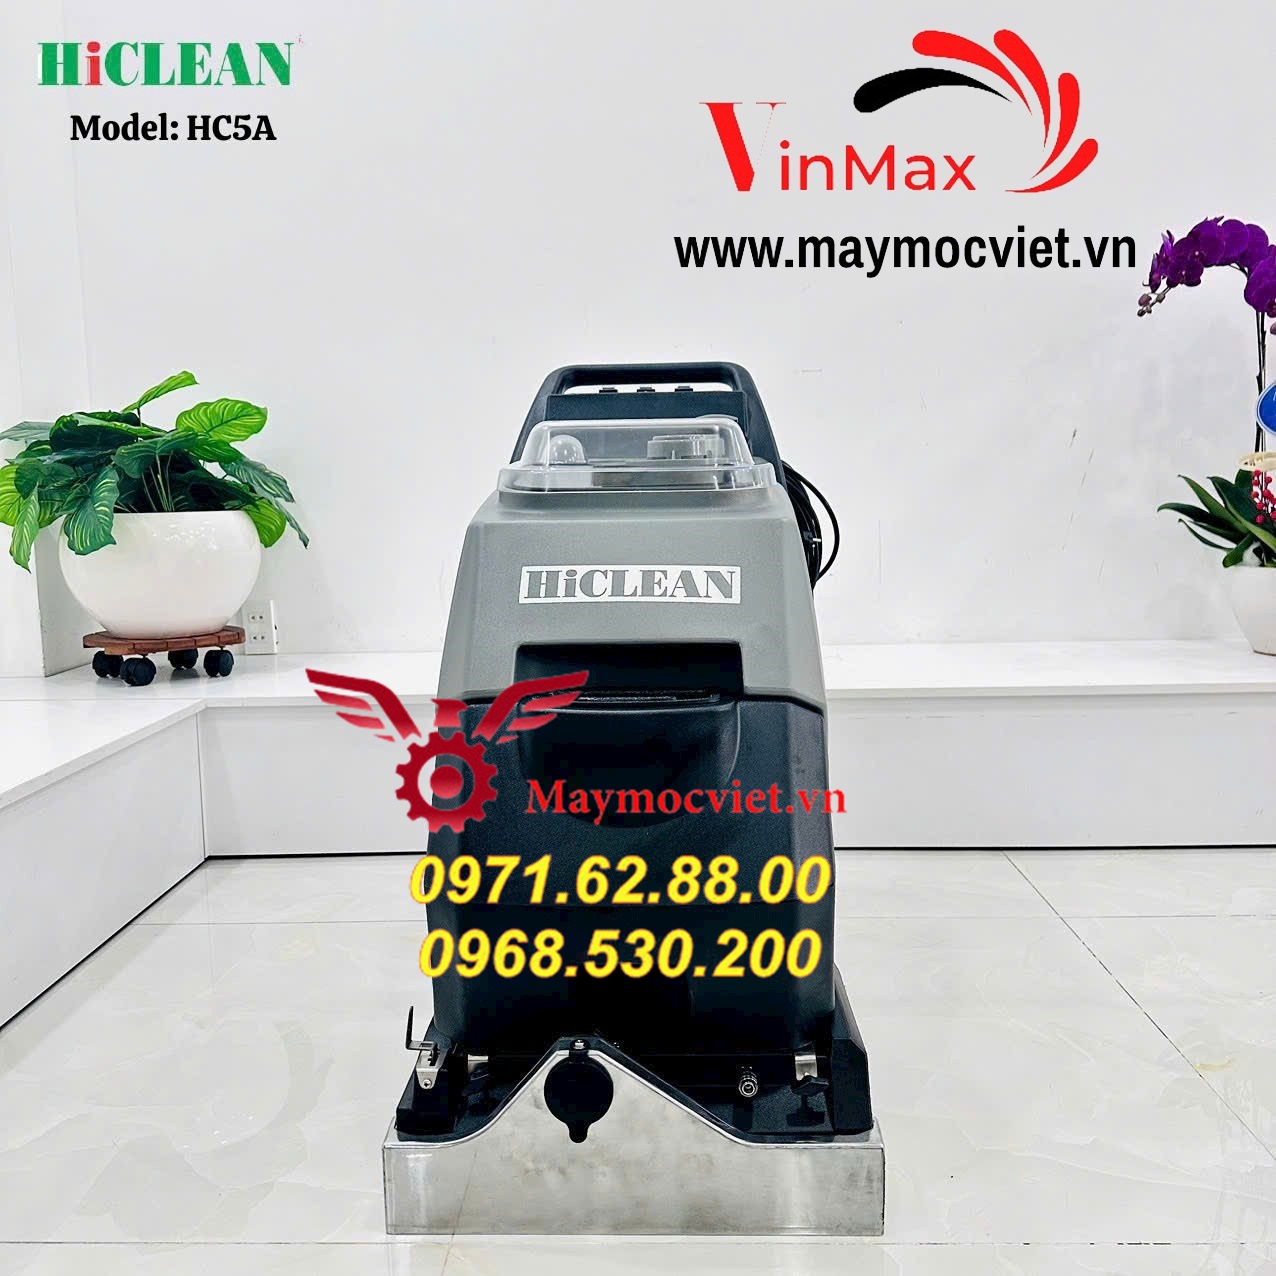 Máy giặt thảm Hiclean HC5A chính hãng giao hàng toàn quốc